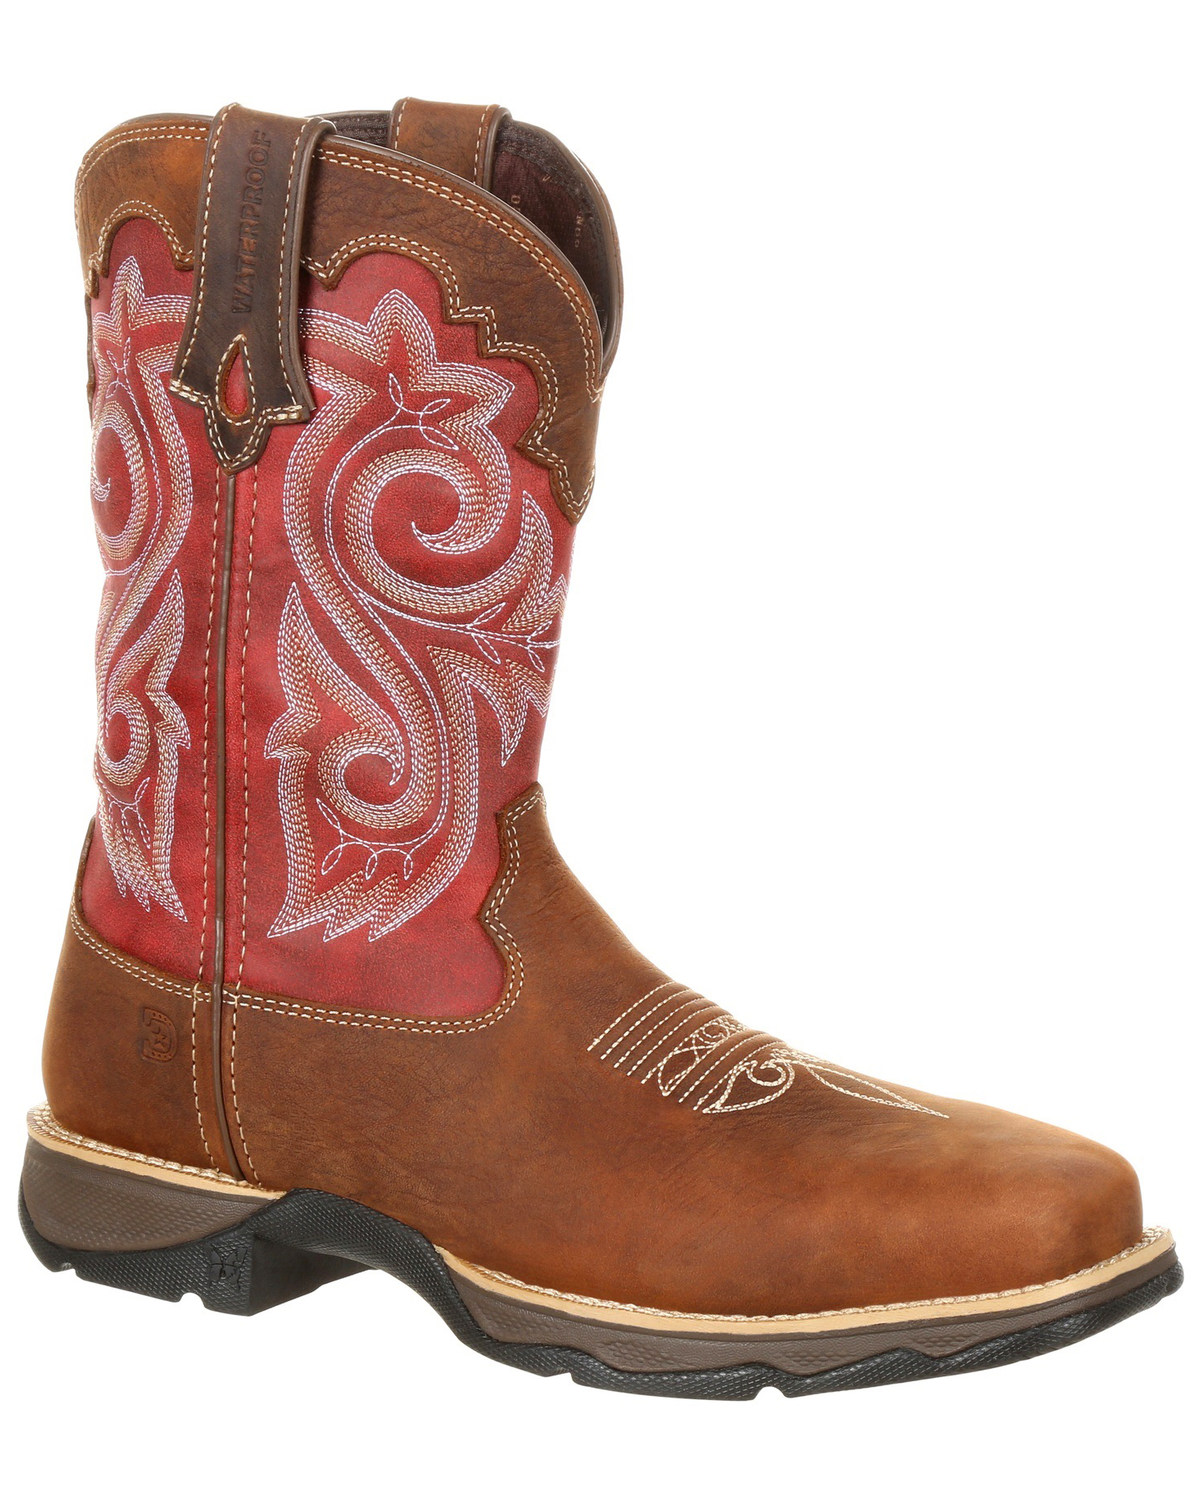 Durango Women's Rebel Waterproof Western Work Boots - Composite Toe